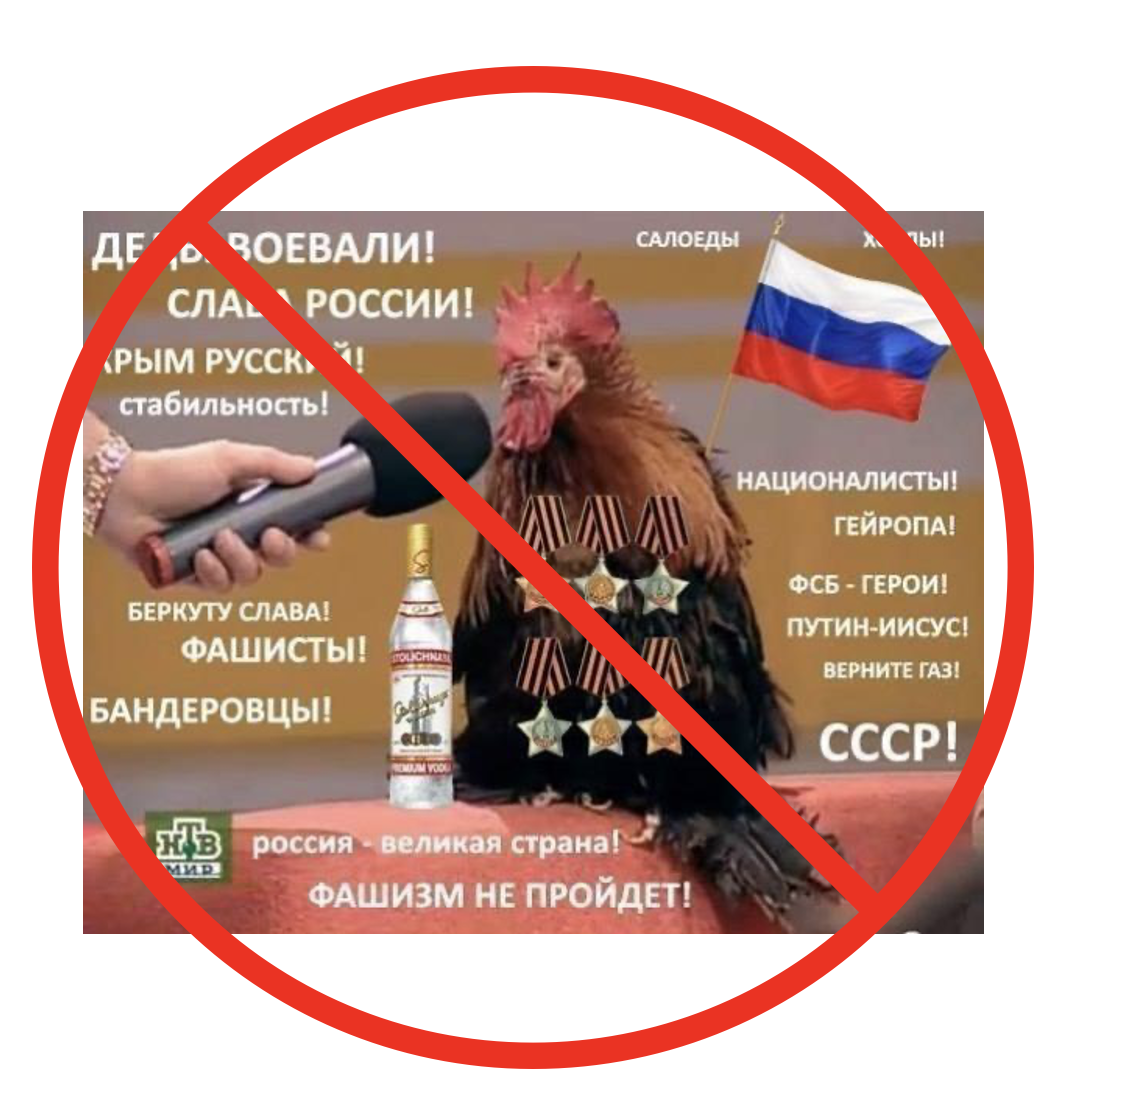 DataMix Defender | Russian People